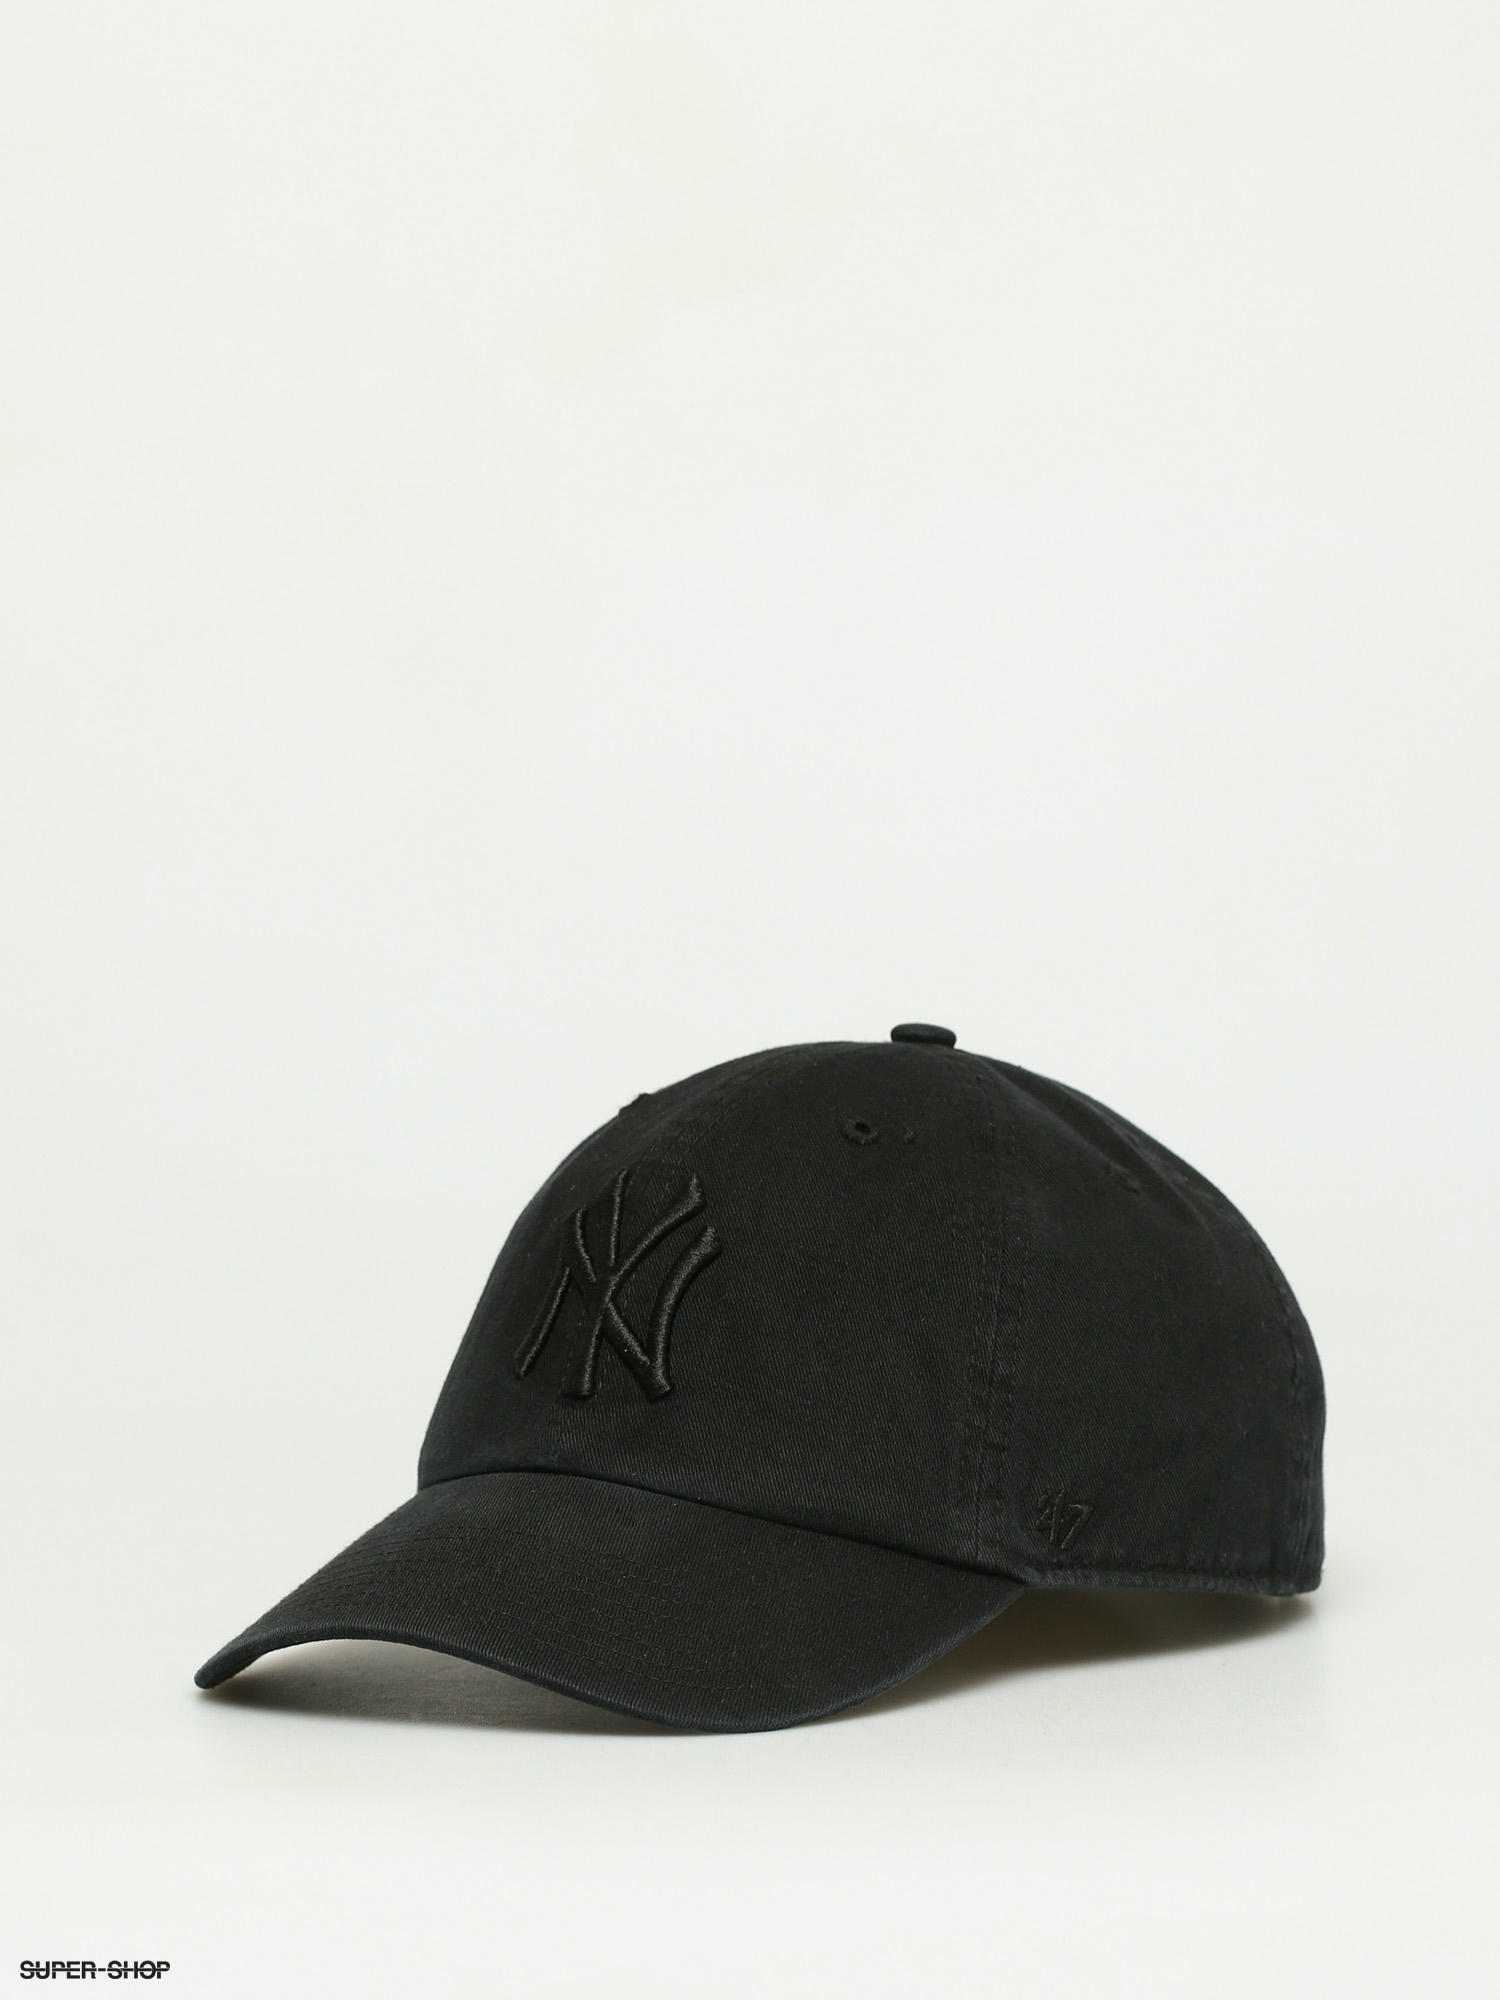 all black yankees cap